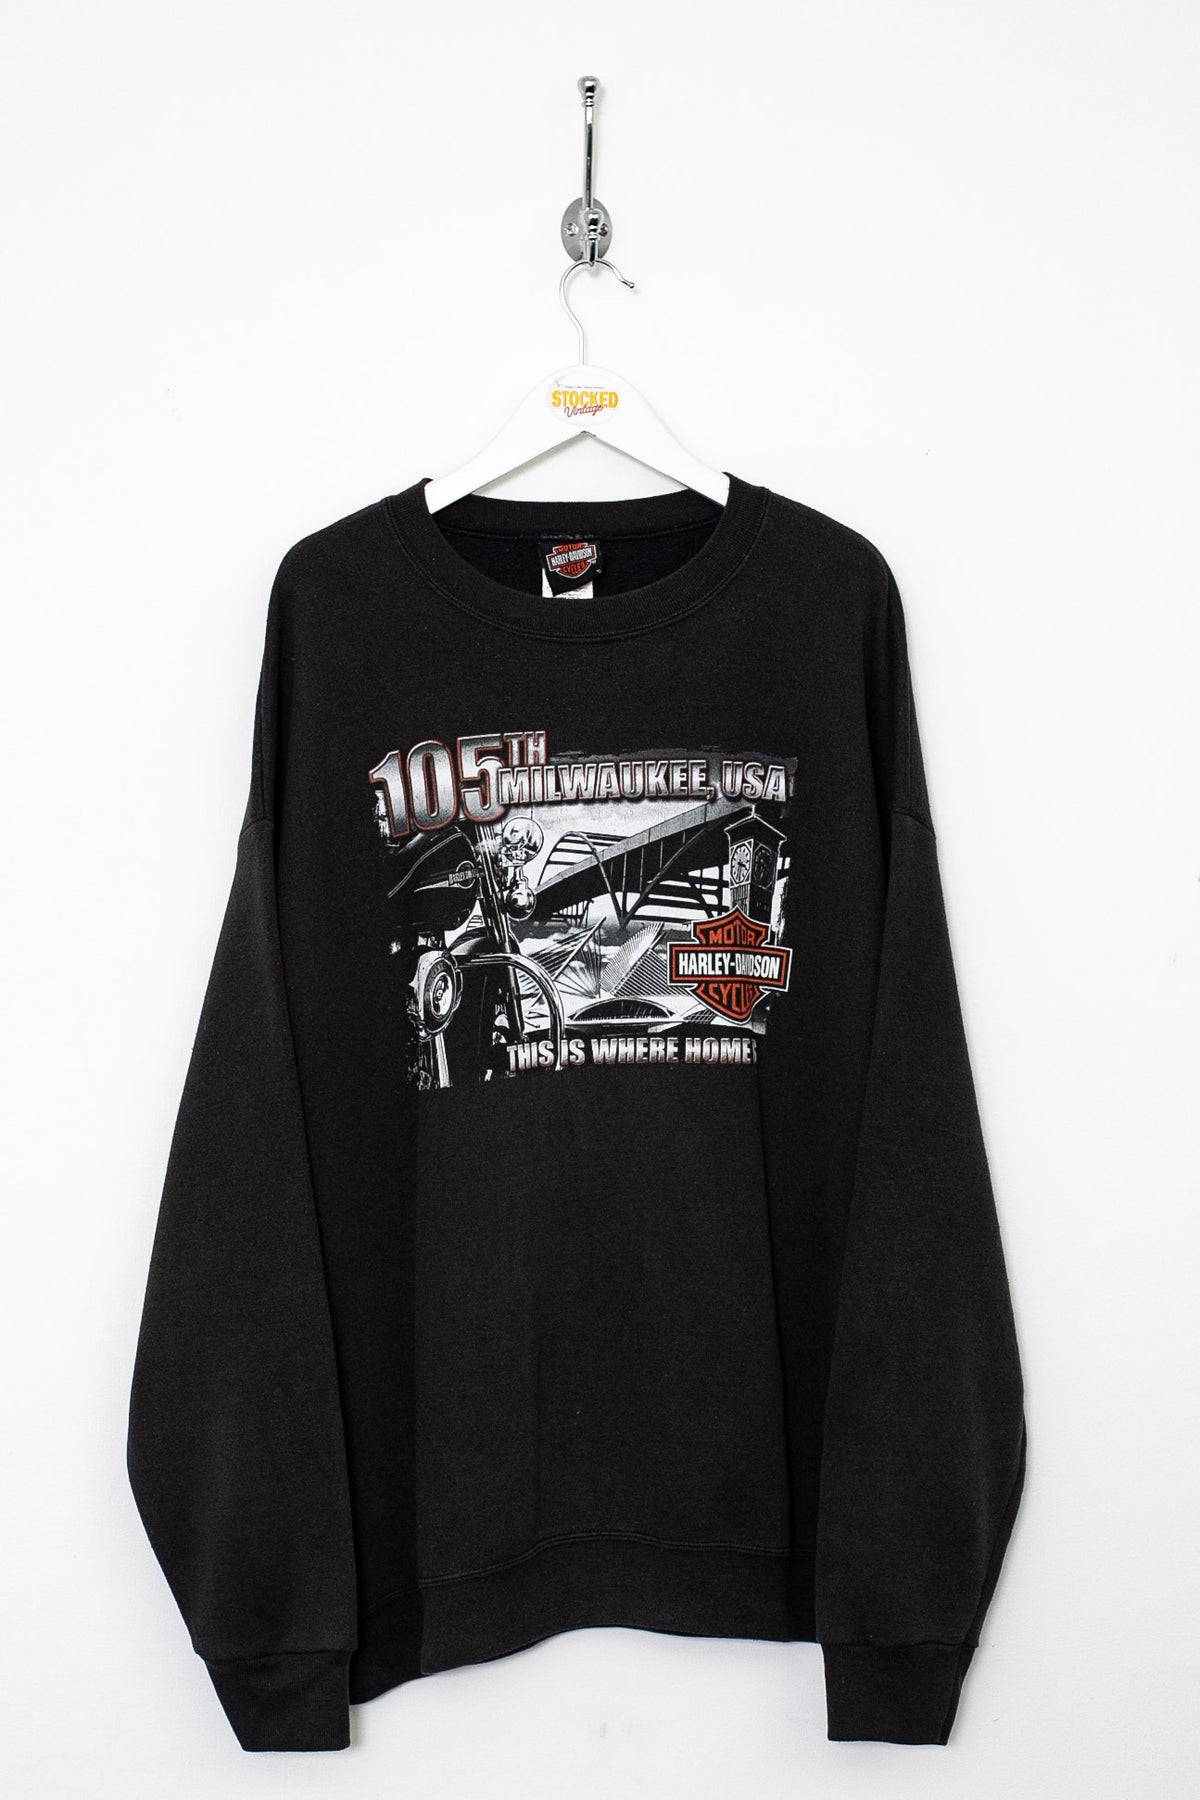 00s Harley Davidson Graphic Sweatshirt (XL)